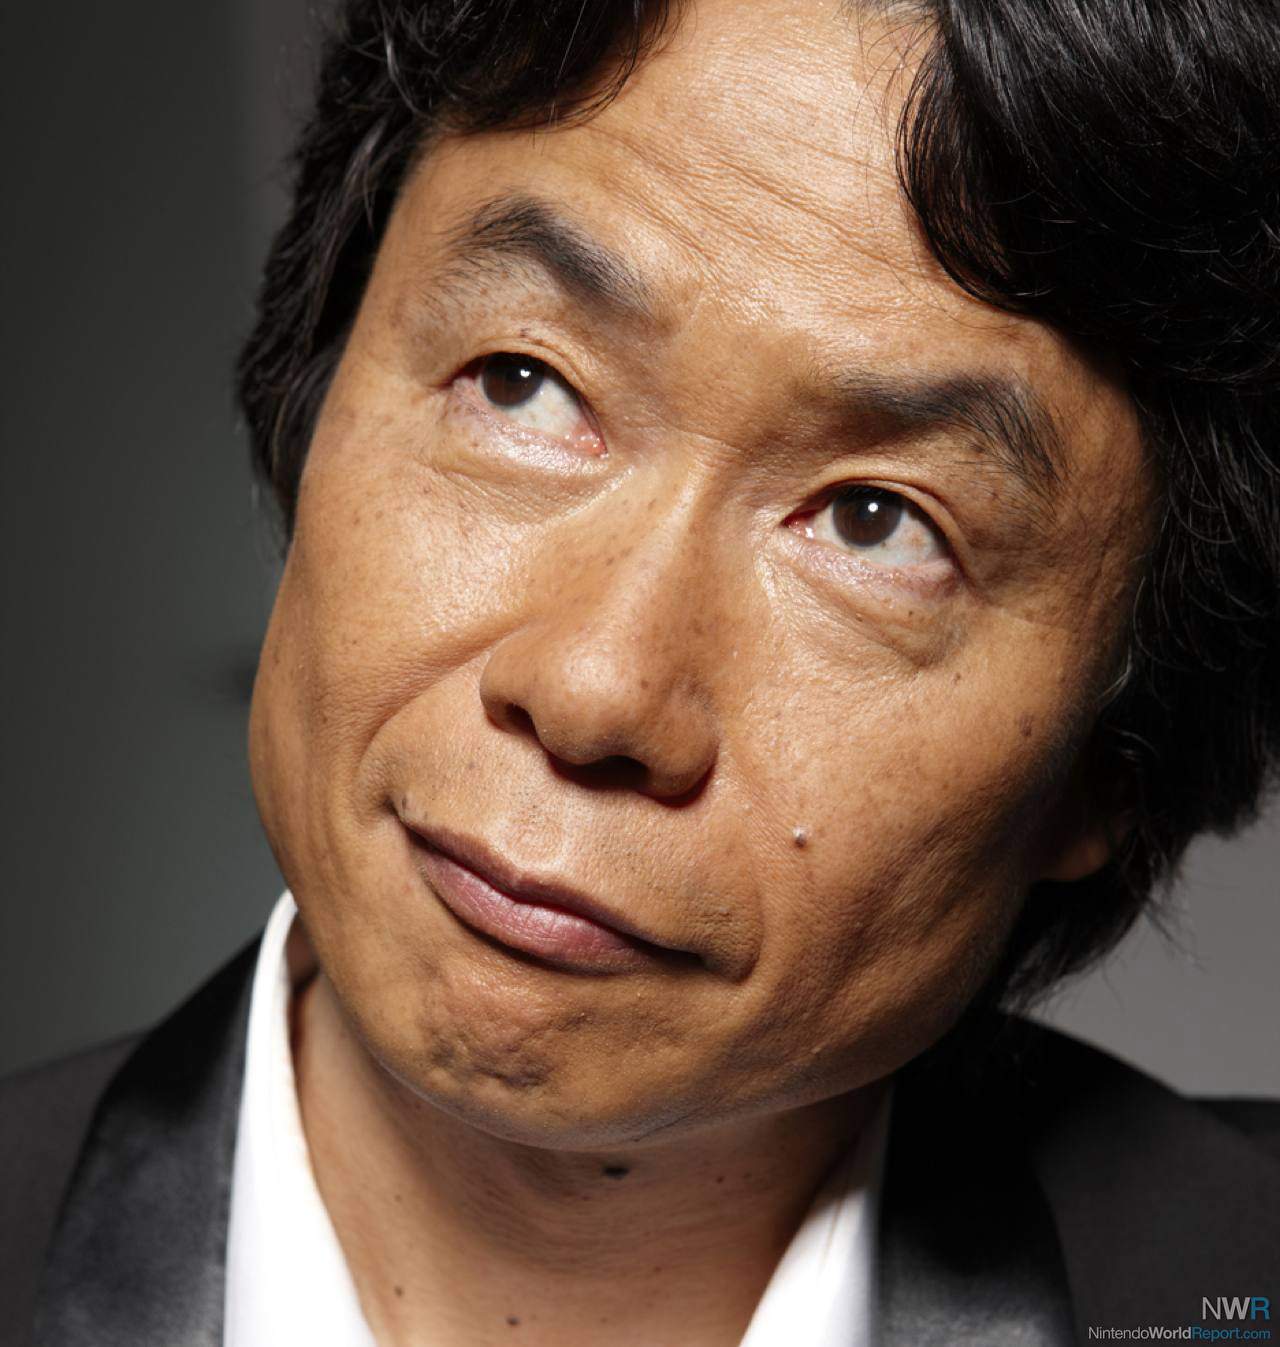 Shigeru Miyamoto NOT Stepping Down from His Position at Nintendo